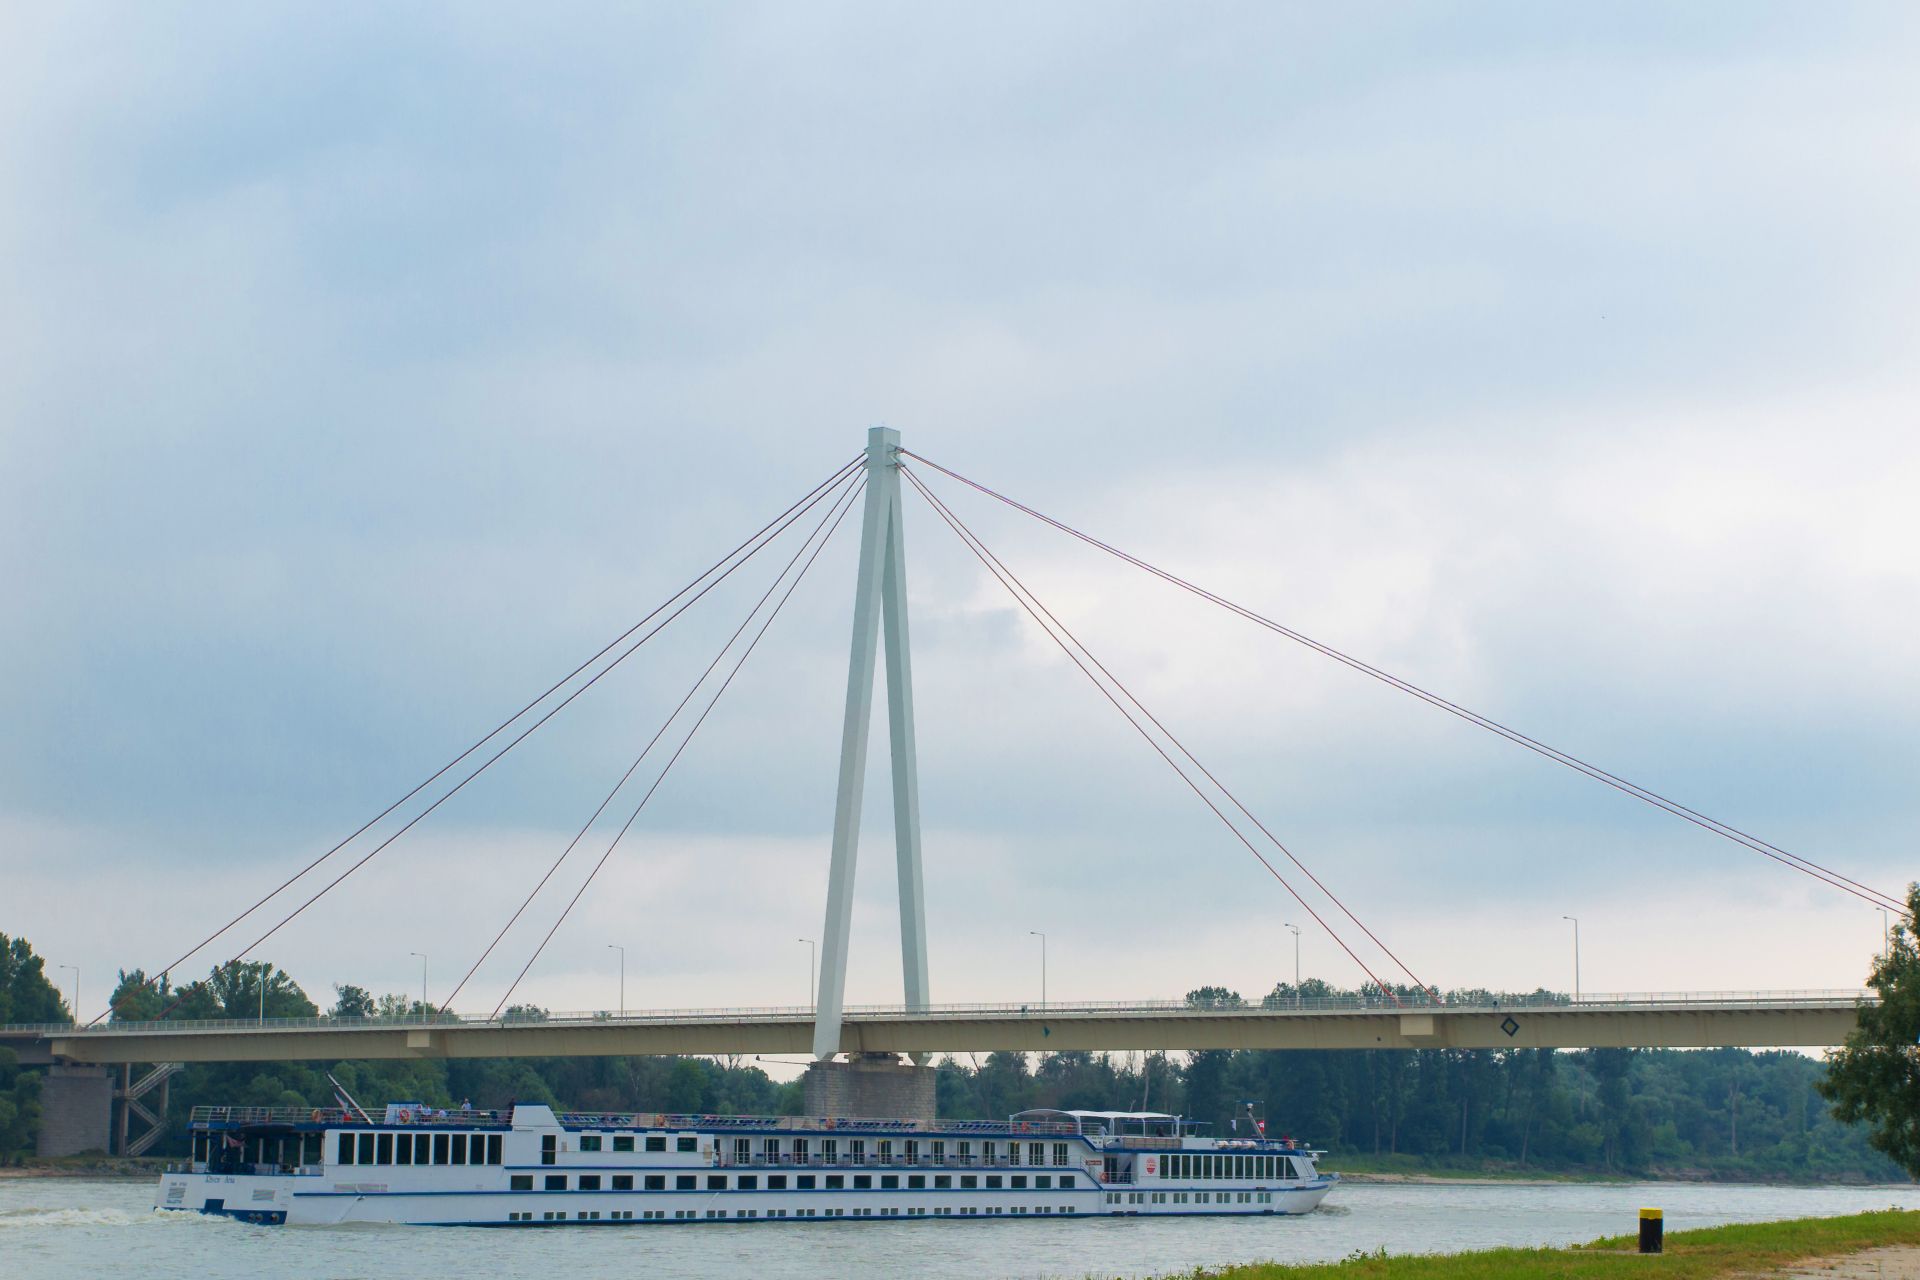 Andreas-Maurer-Brücke Hainburg mit einer Spannweite von 228 m